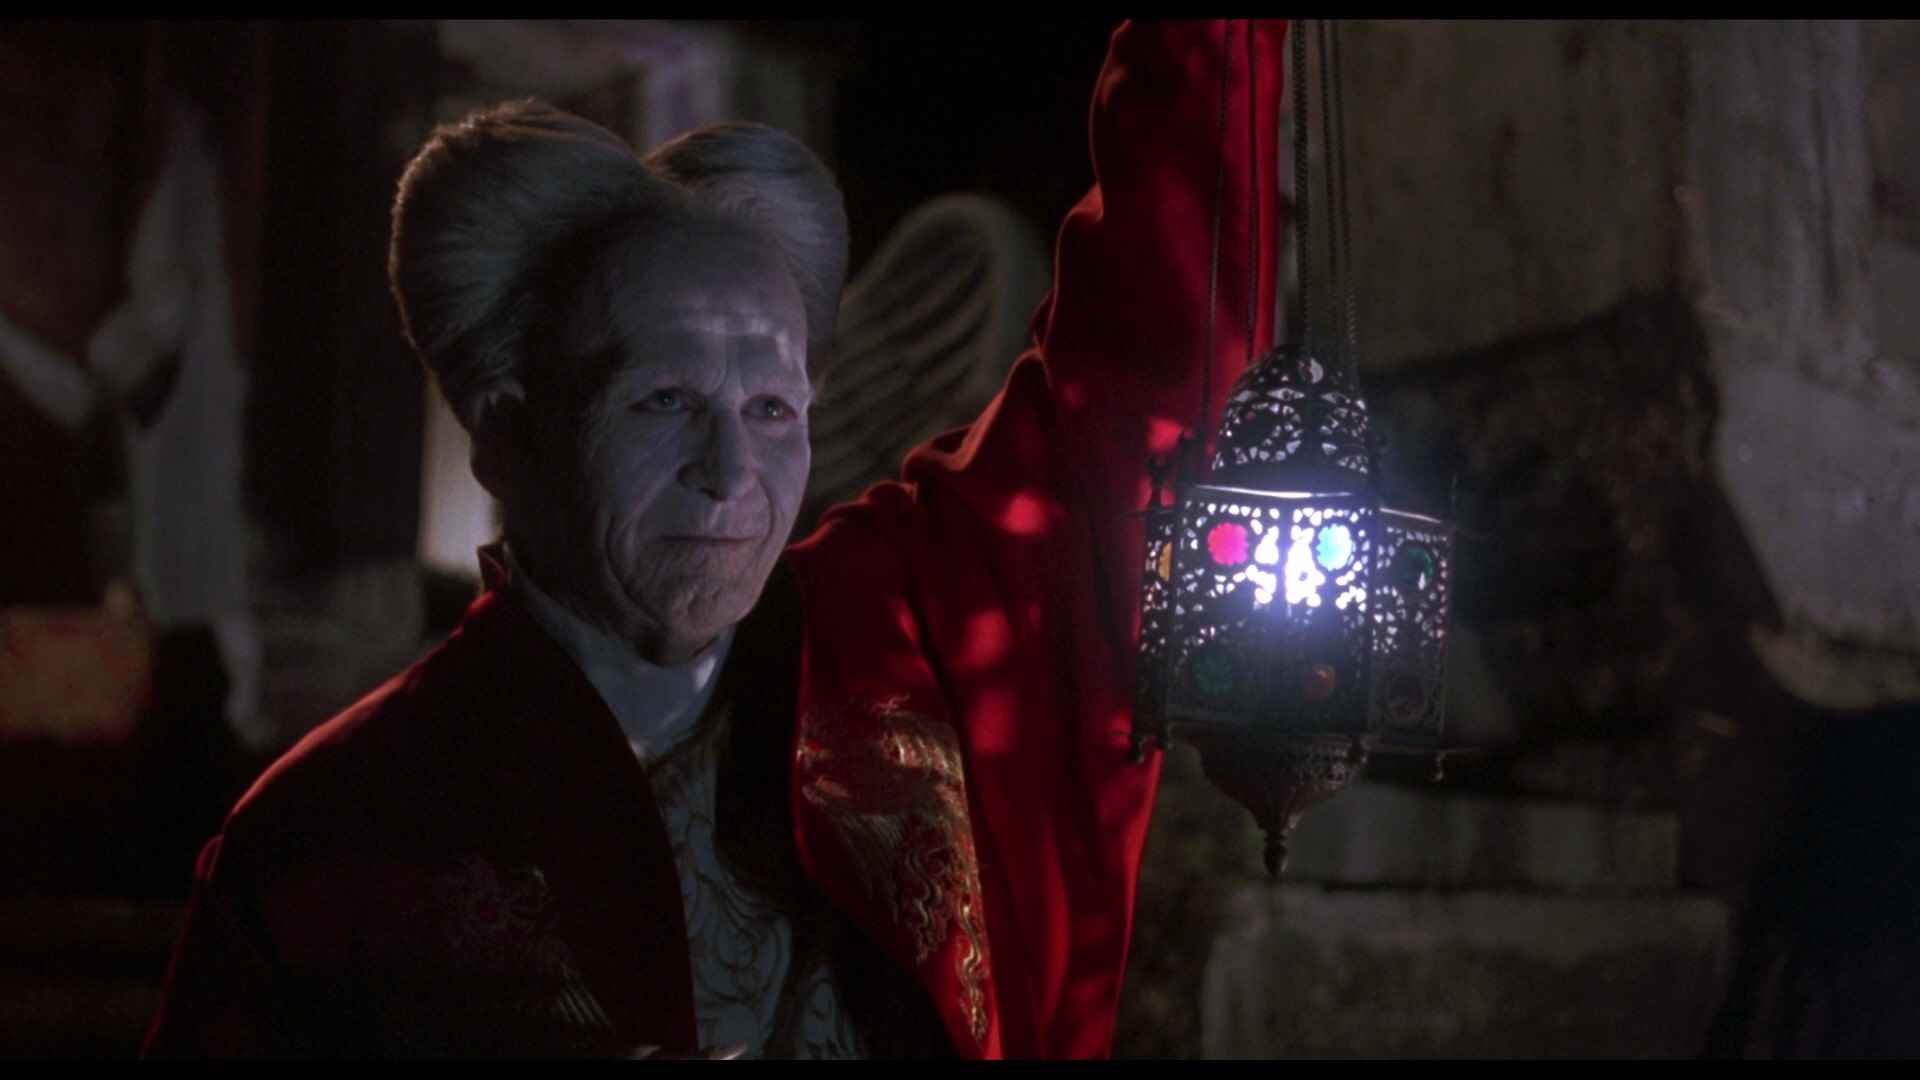 Dracula in Bram Stoker's Dracula